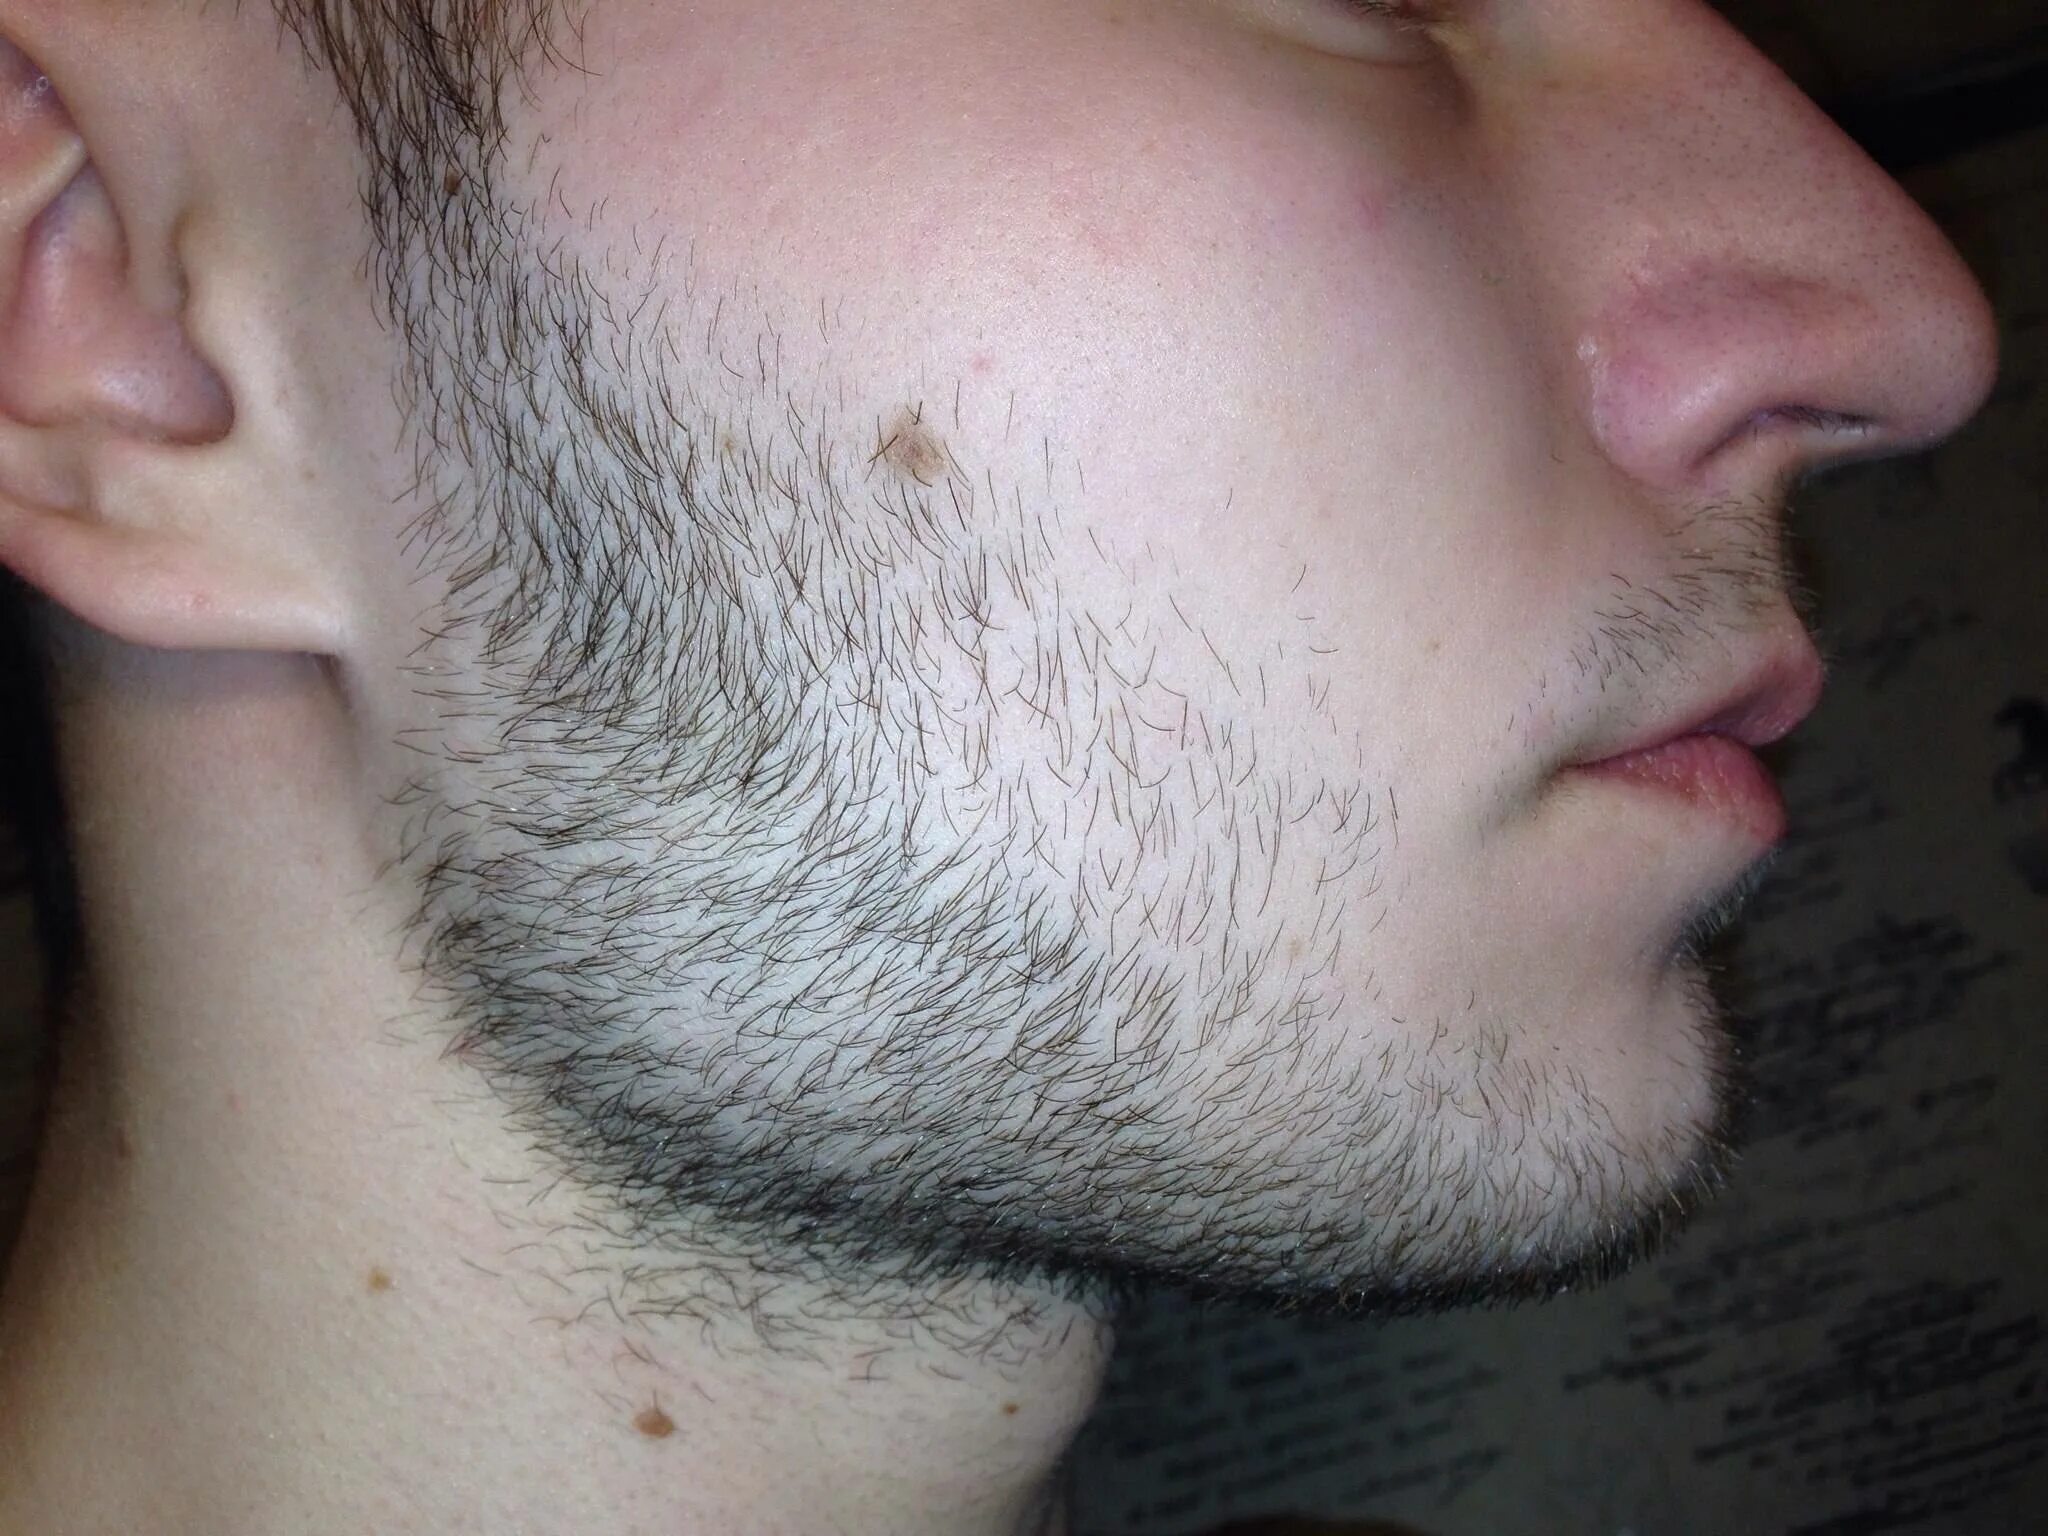 Рост волос на лице у мужчин. Редкая борода миноксидил. Щетина на лице. Однодневная щетина.